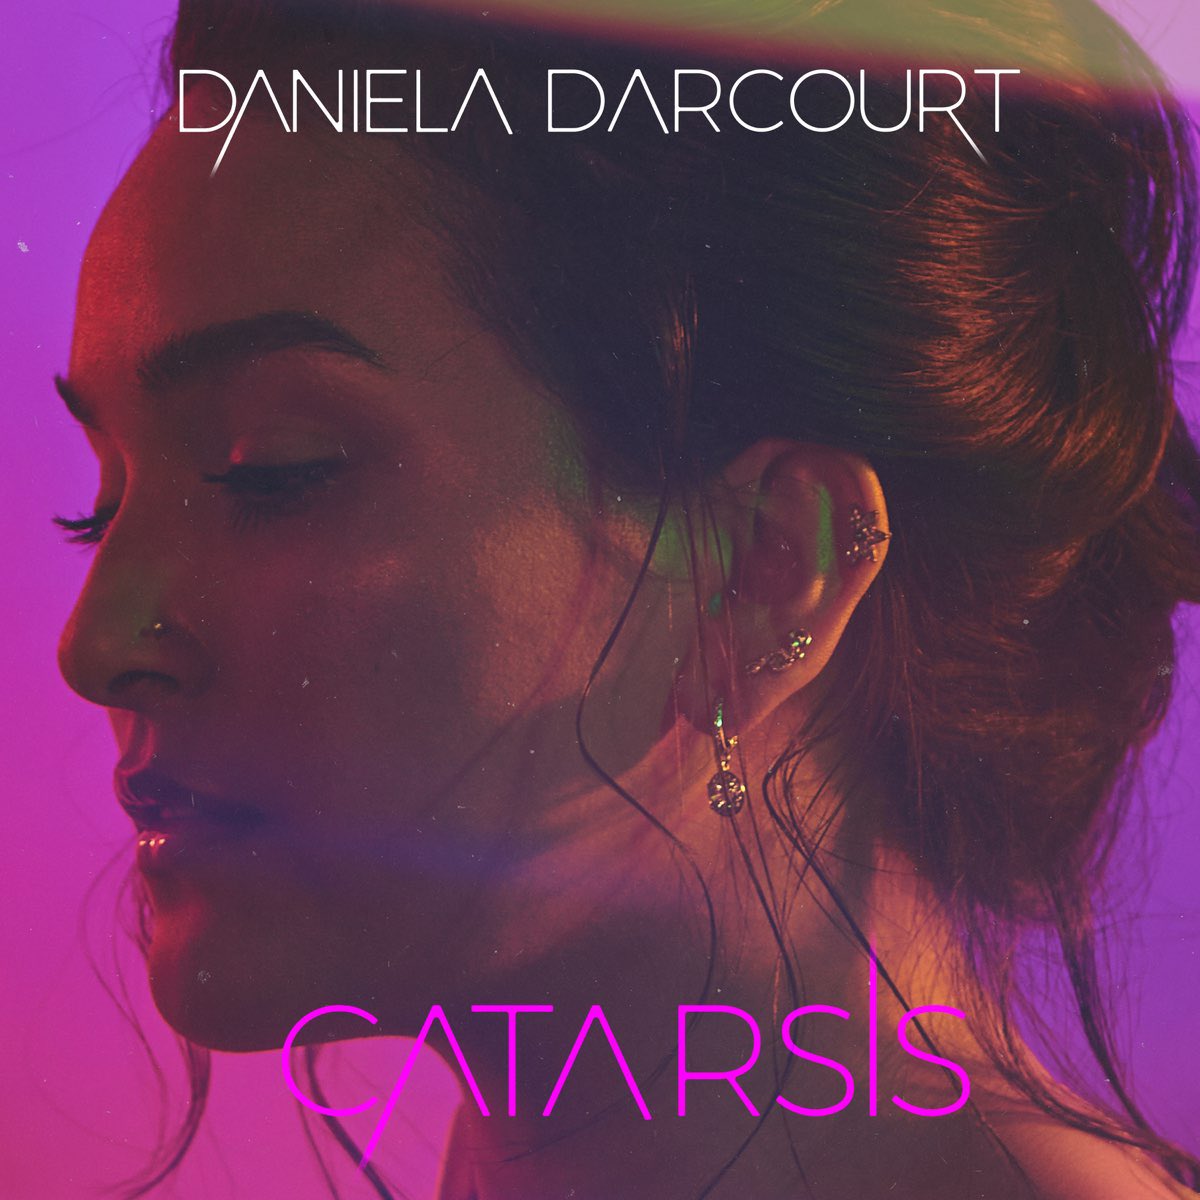 Daniela Darcourt ha sido nominada al Latin Grammy Awards,  en la categoría Mejor Álbum de Salsa por 'Catarsis' 🇵🇪🎤🎶

#DanielaDarcourt #LatinGrammyAwards #MejorAlbumDeSalsa #Catarsis #TalentoPeruano